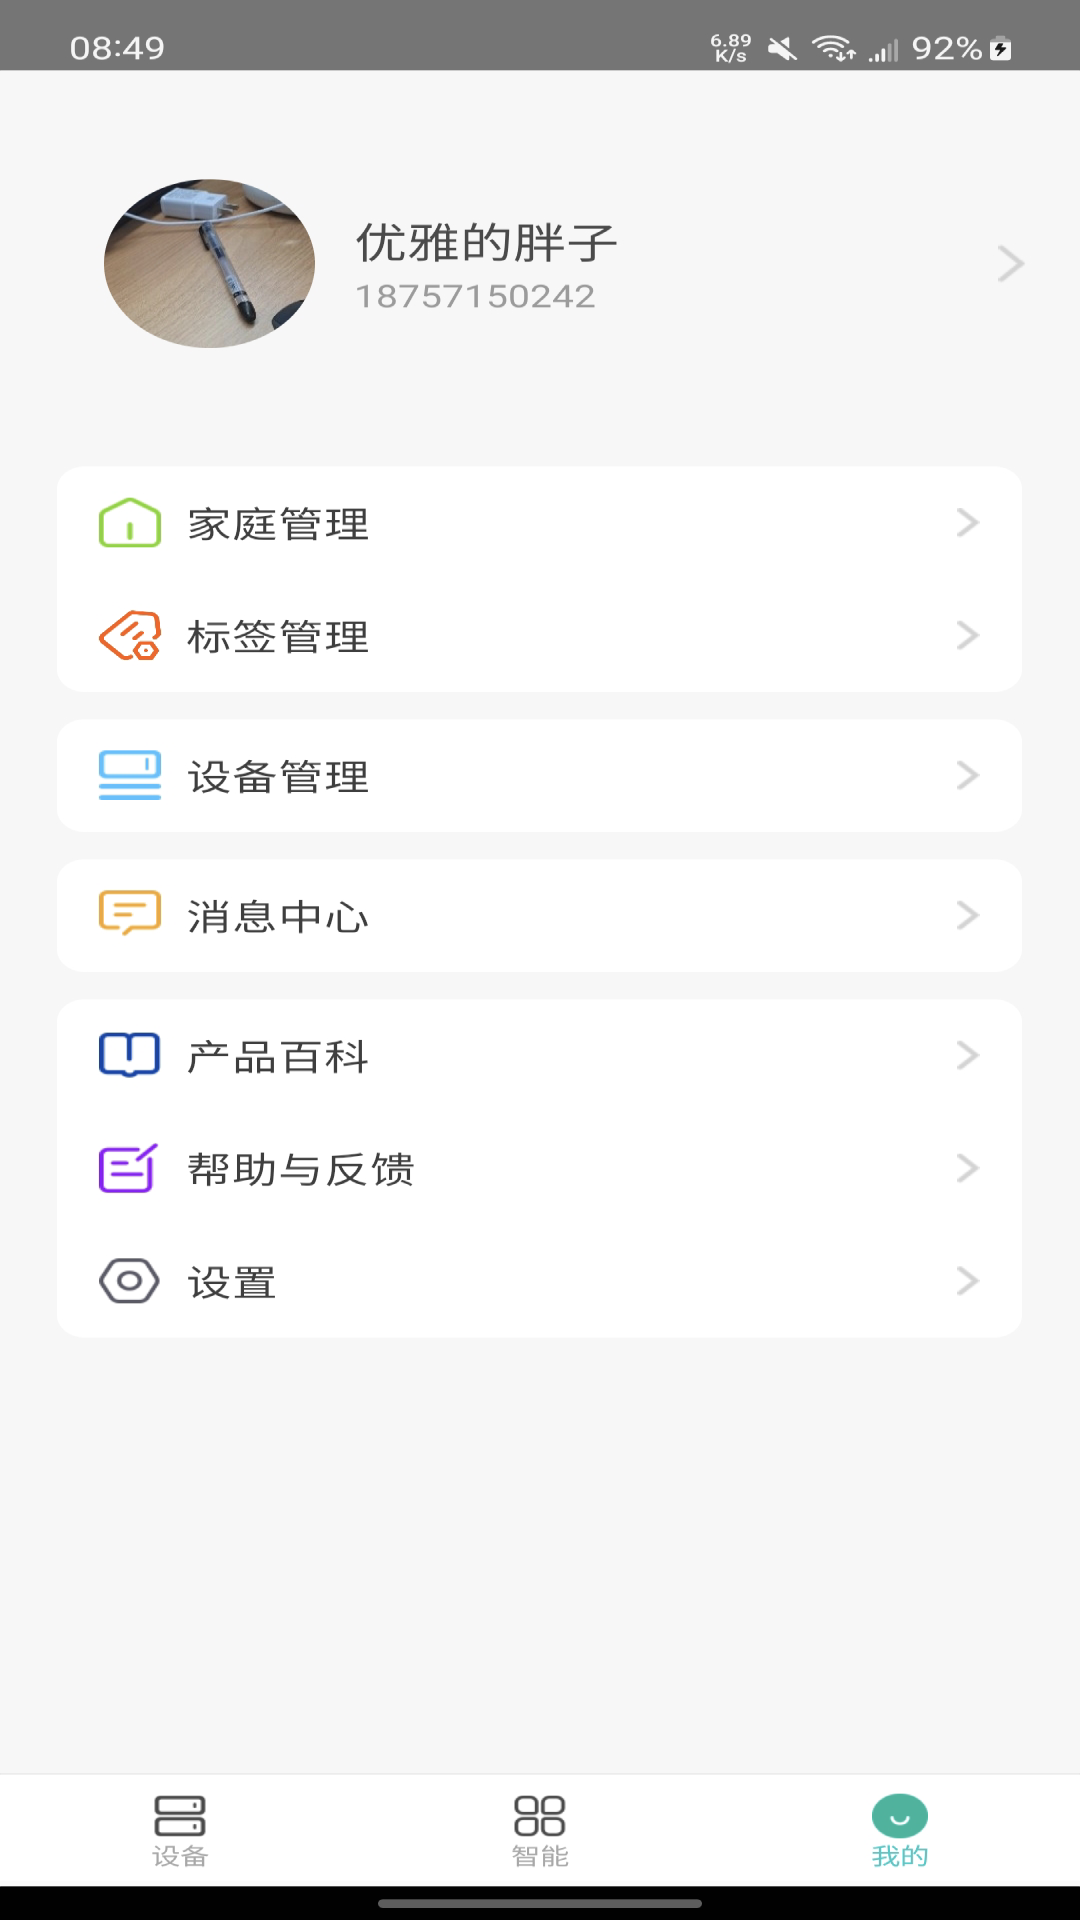 鸿雁智家app下载,鸿雁智家下载app官方版 v2.1.0